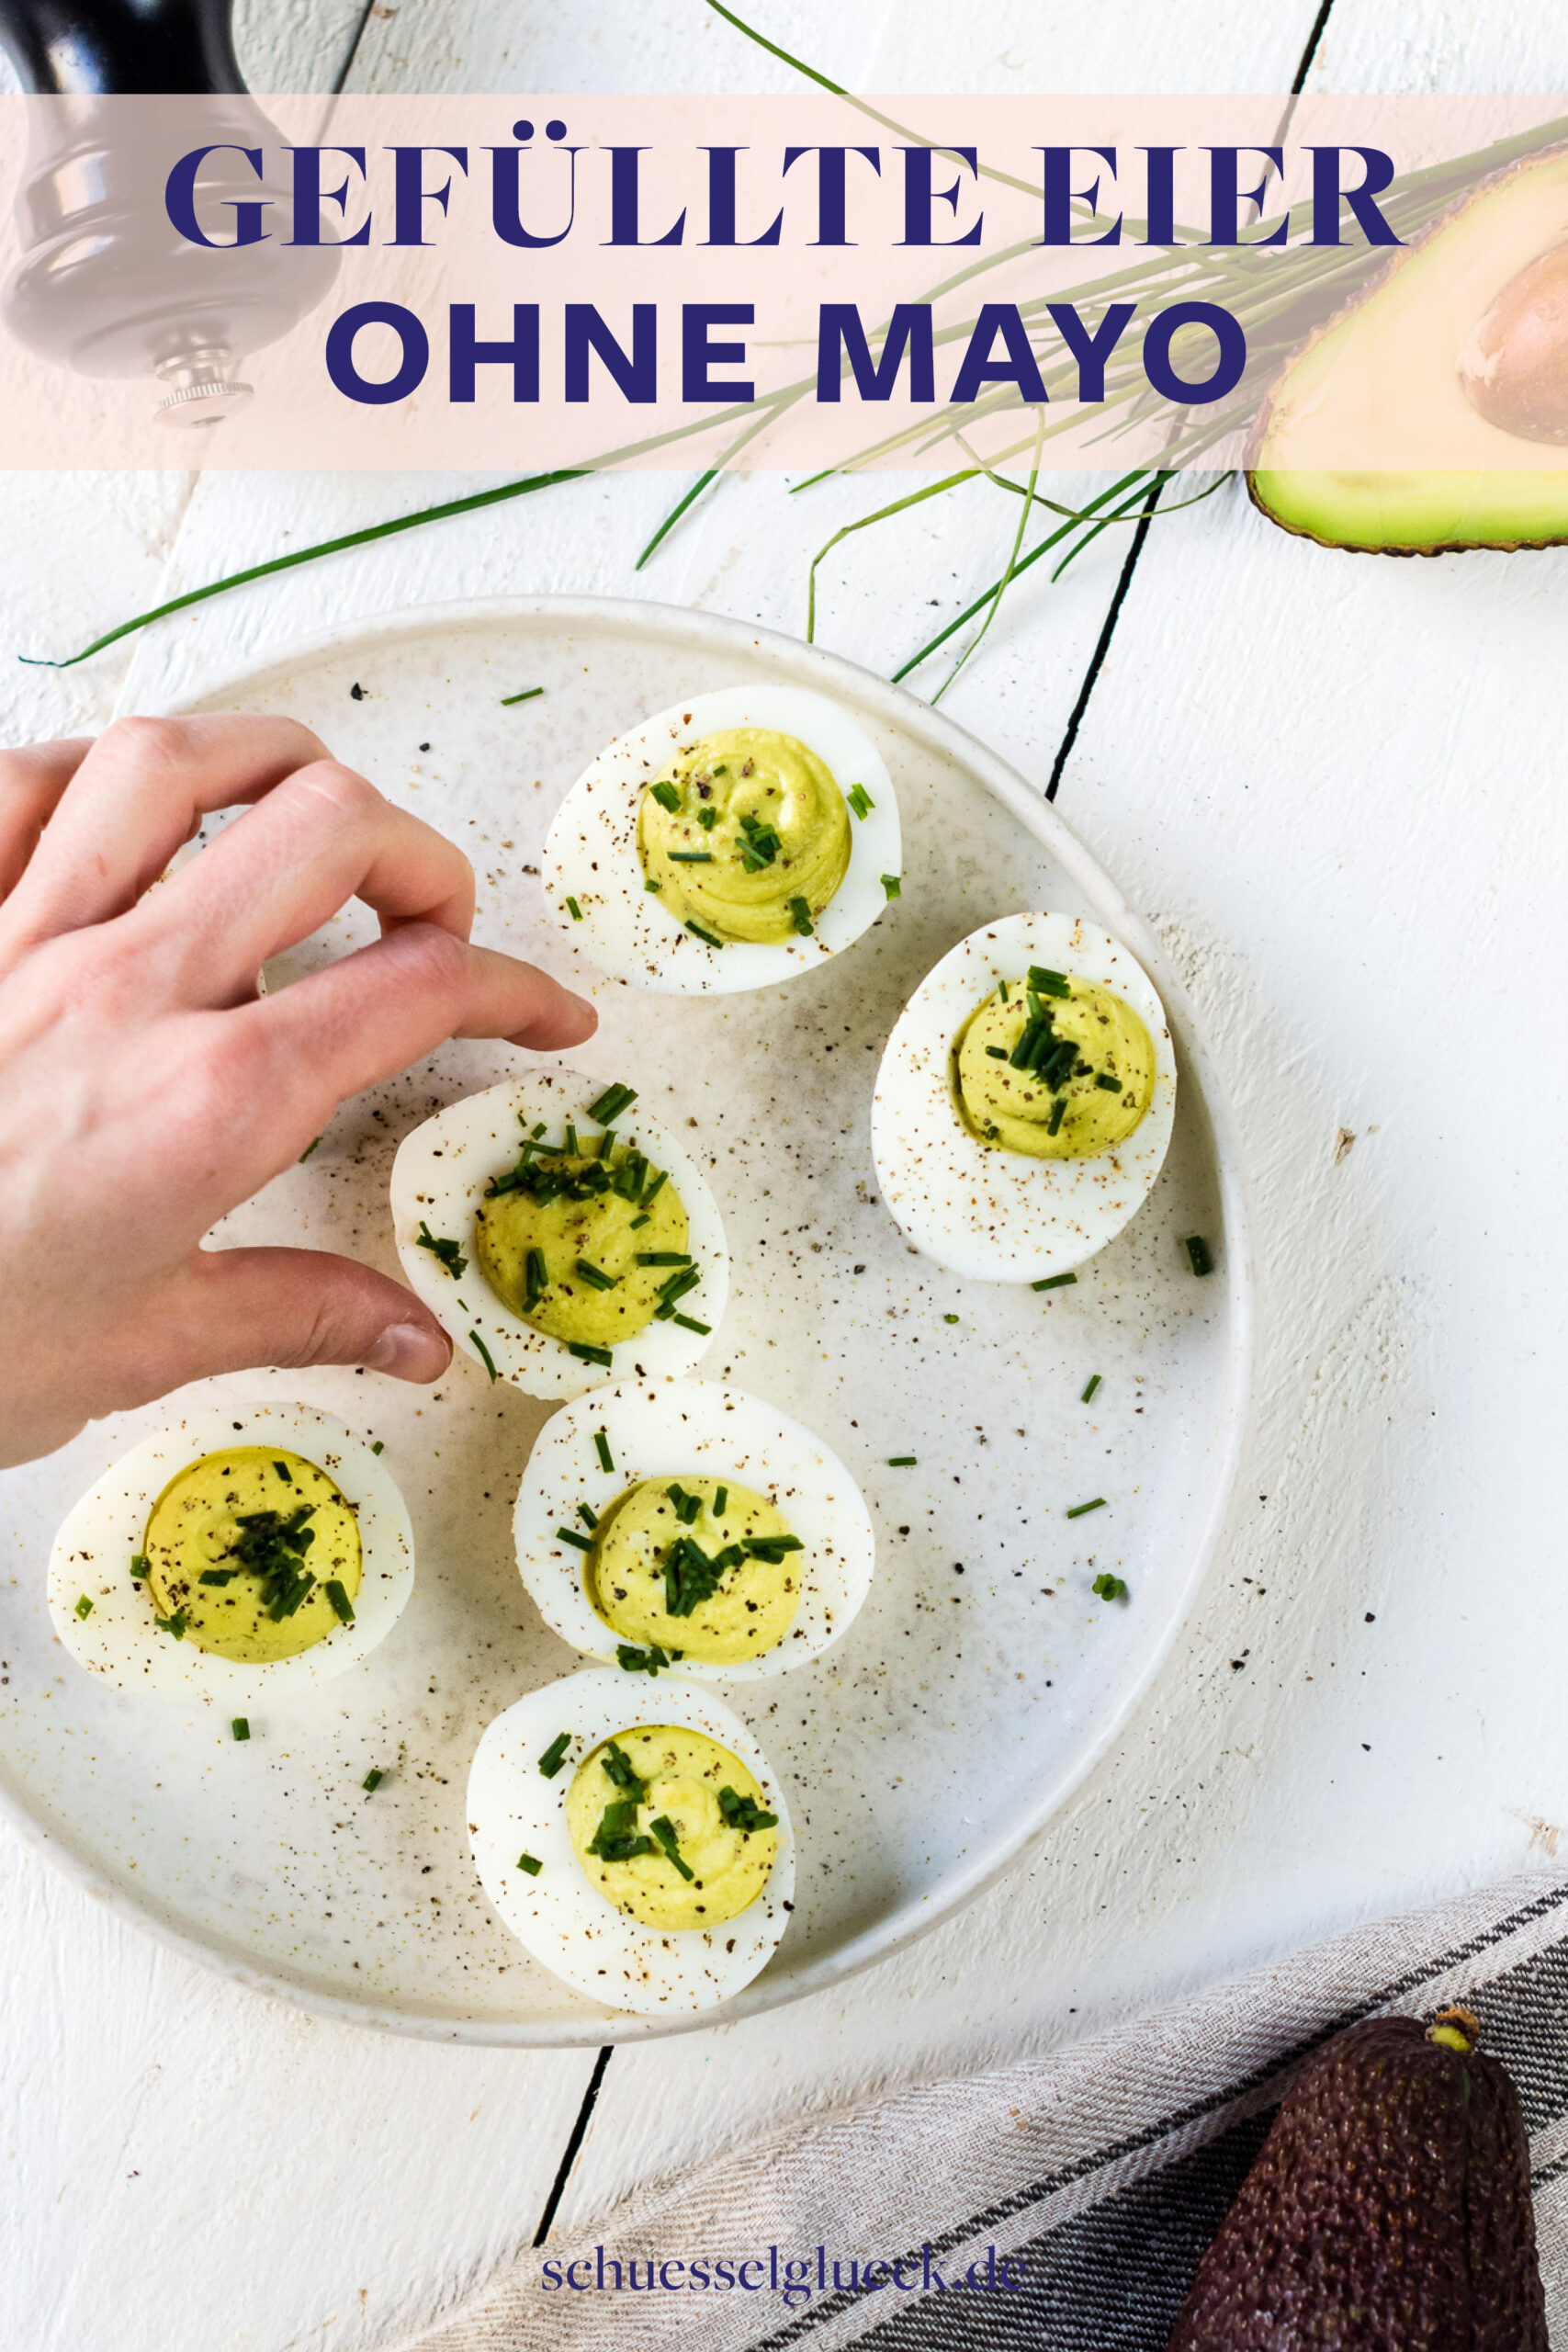 Avocado Deviled Eggs: gefüllte Eier ohne Mayo selber machen